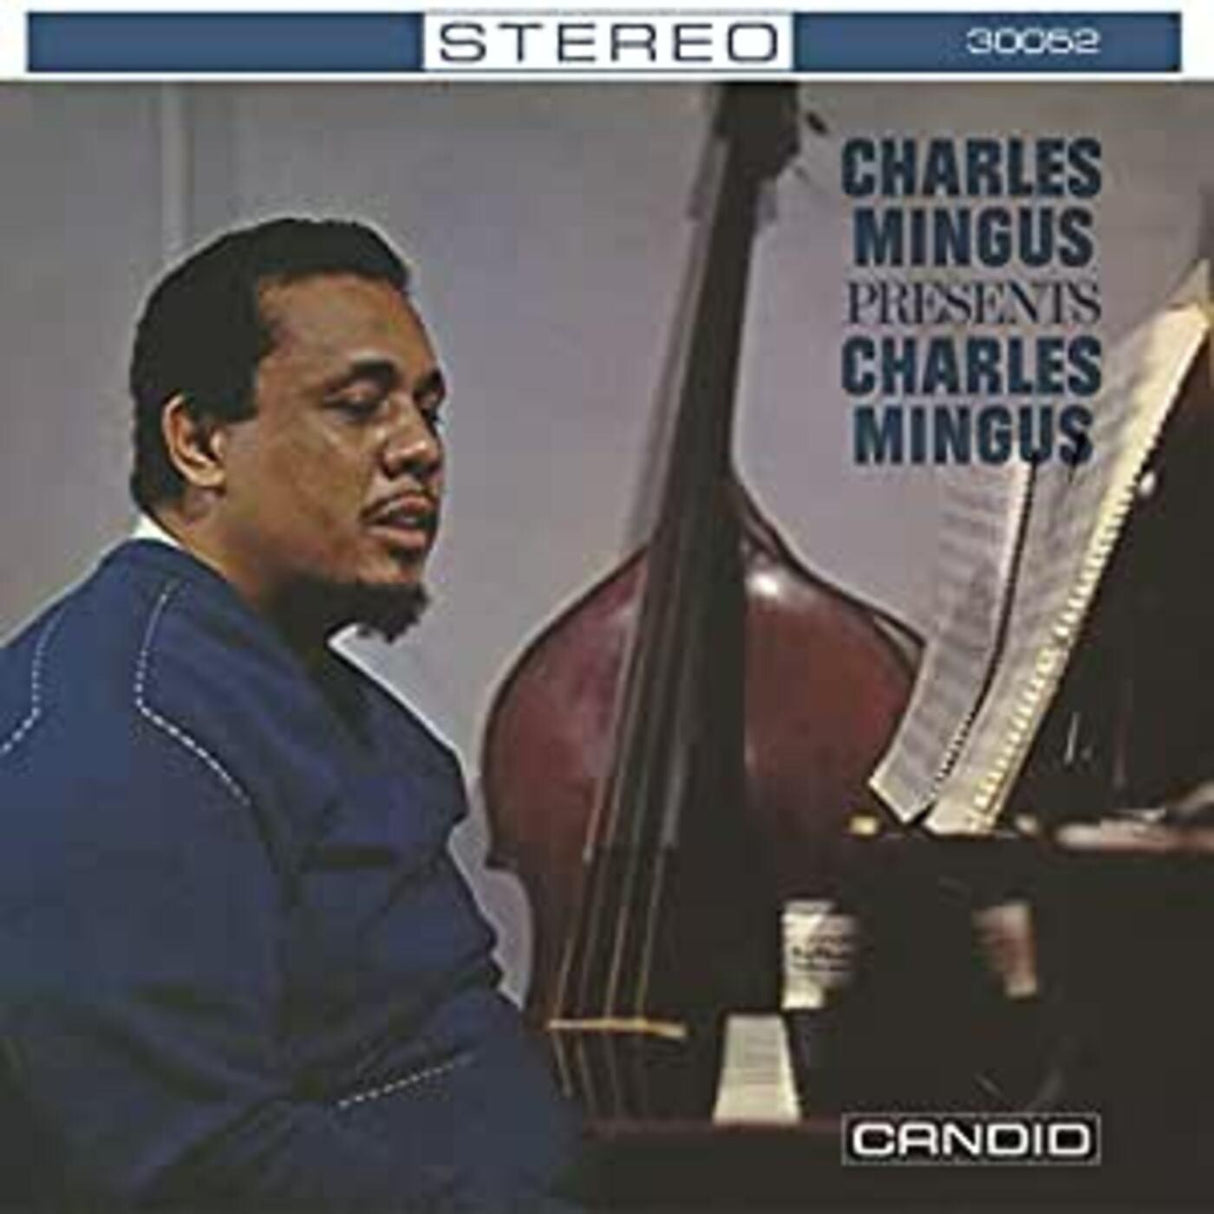 Presents Charles Mingus [CD]